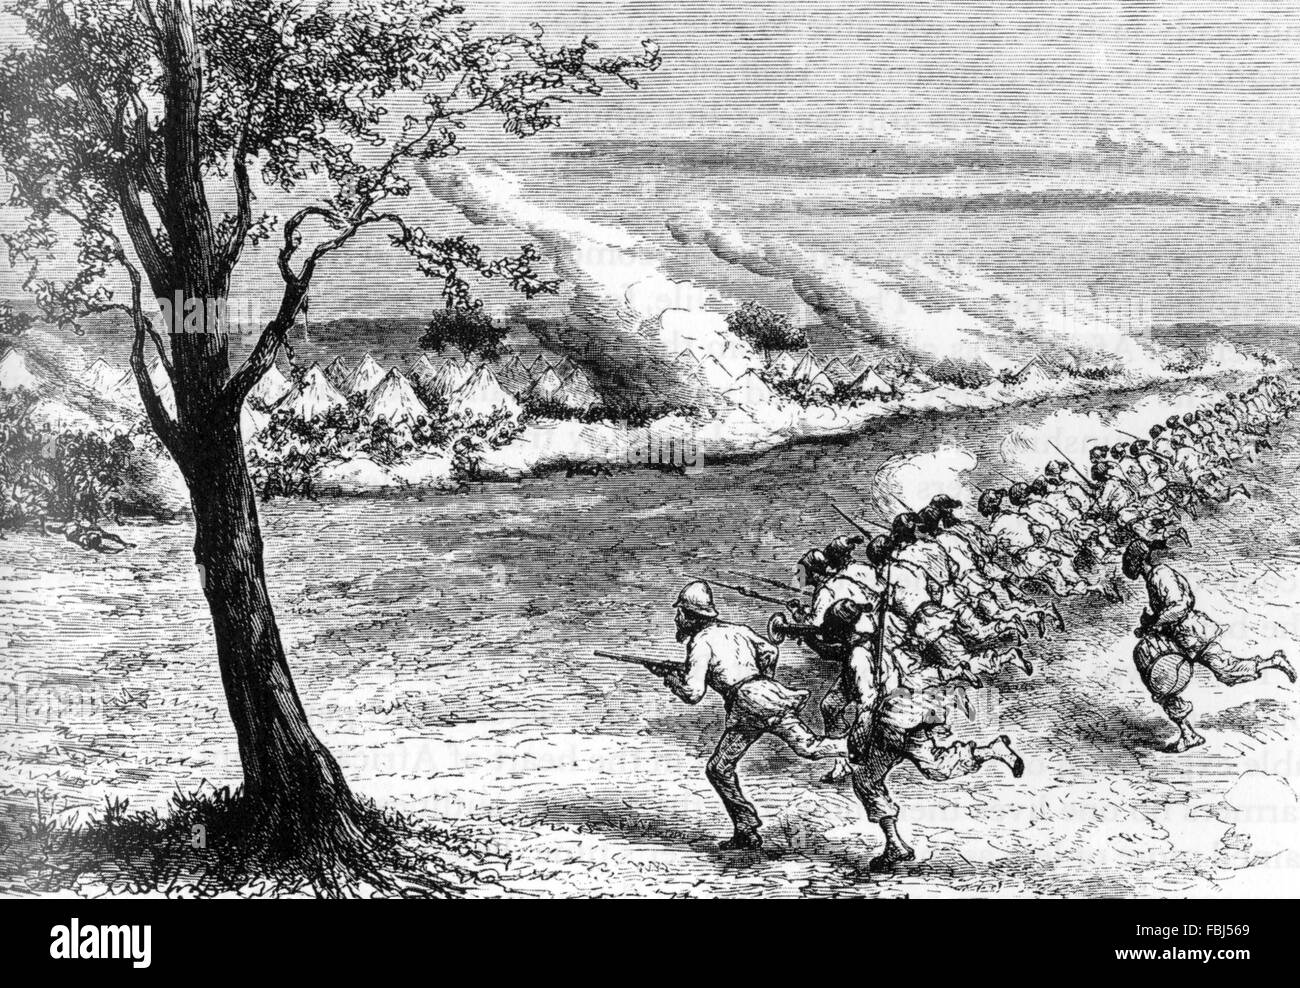 Britische Forscher SAMUEL BAKER (1821-1893) führt seine Forty Thieves bei einem Angriff auf Sklavenhändler an Fatiko während der Schlacht Masindi 1872 Stockfoto